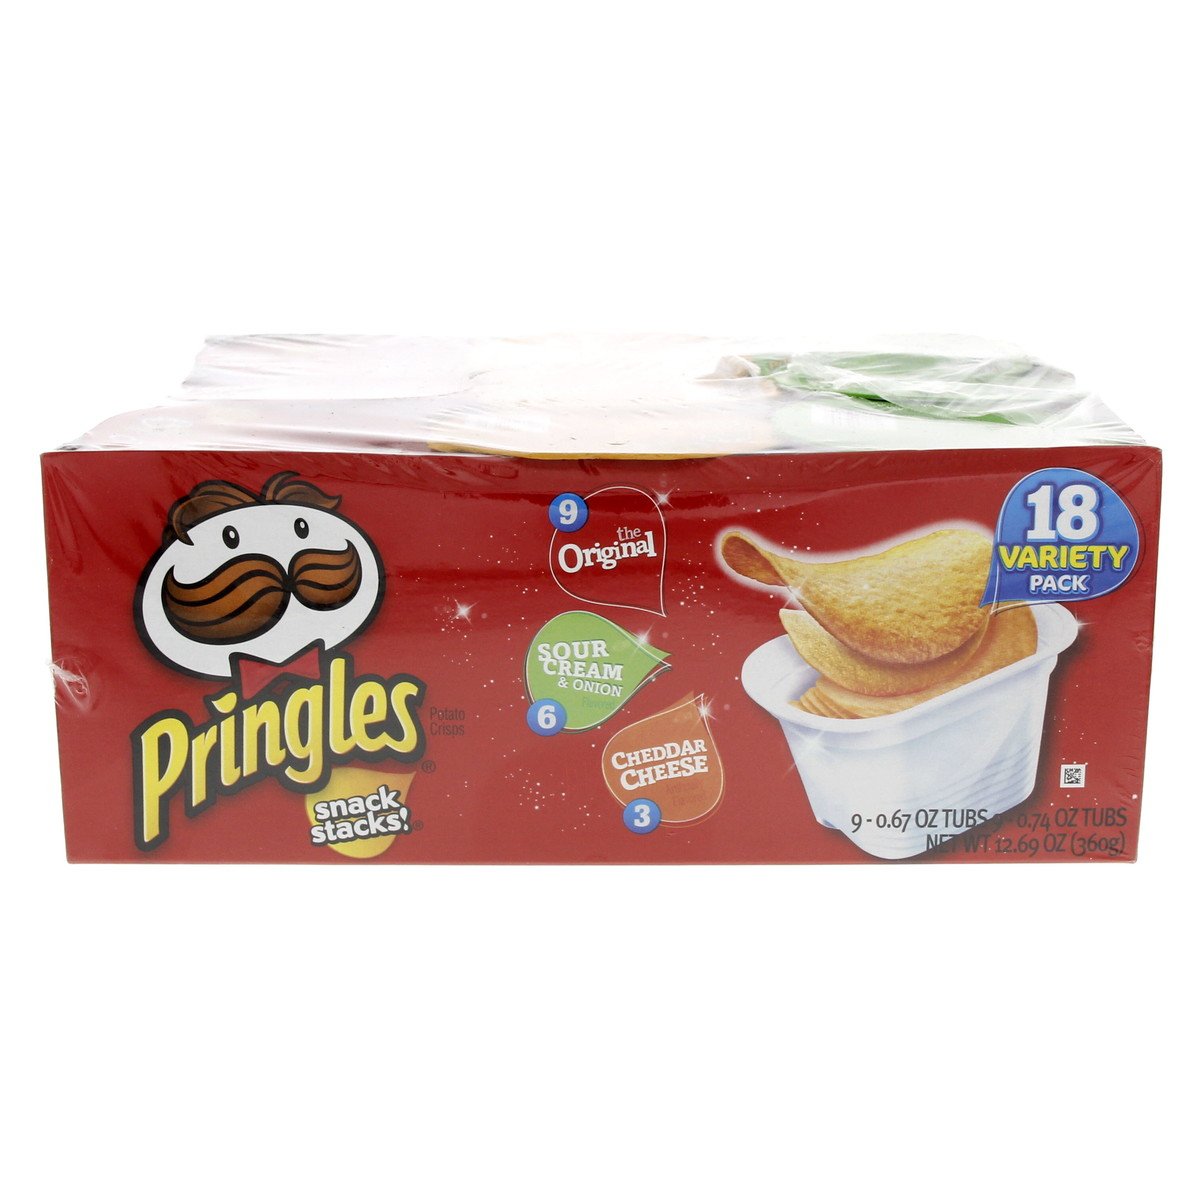 Pringles Snack Stacks variety Pack 21 g